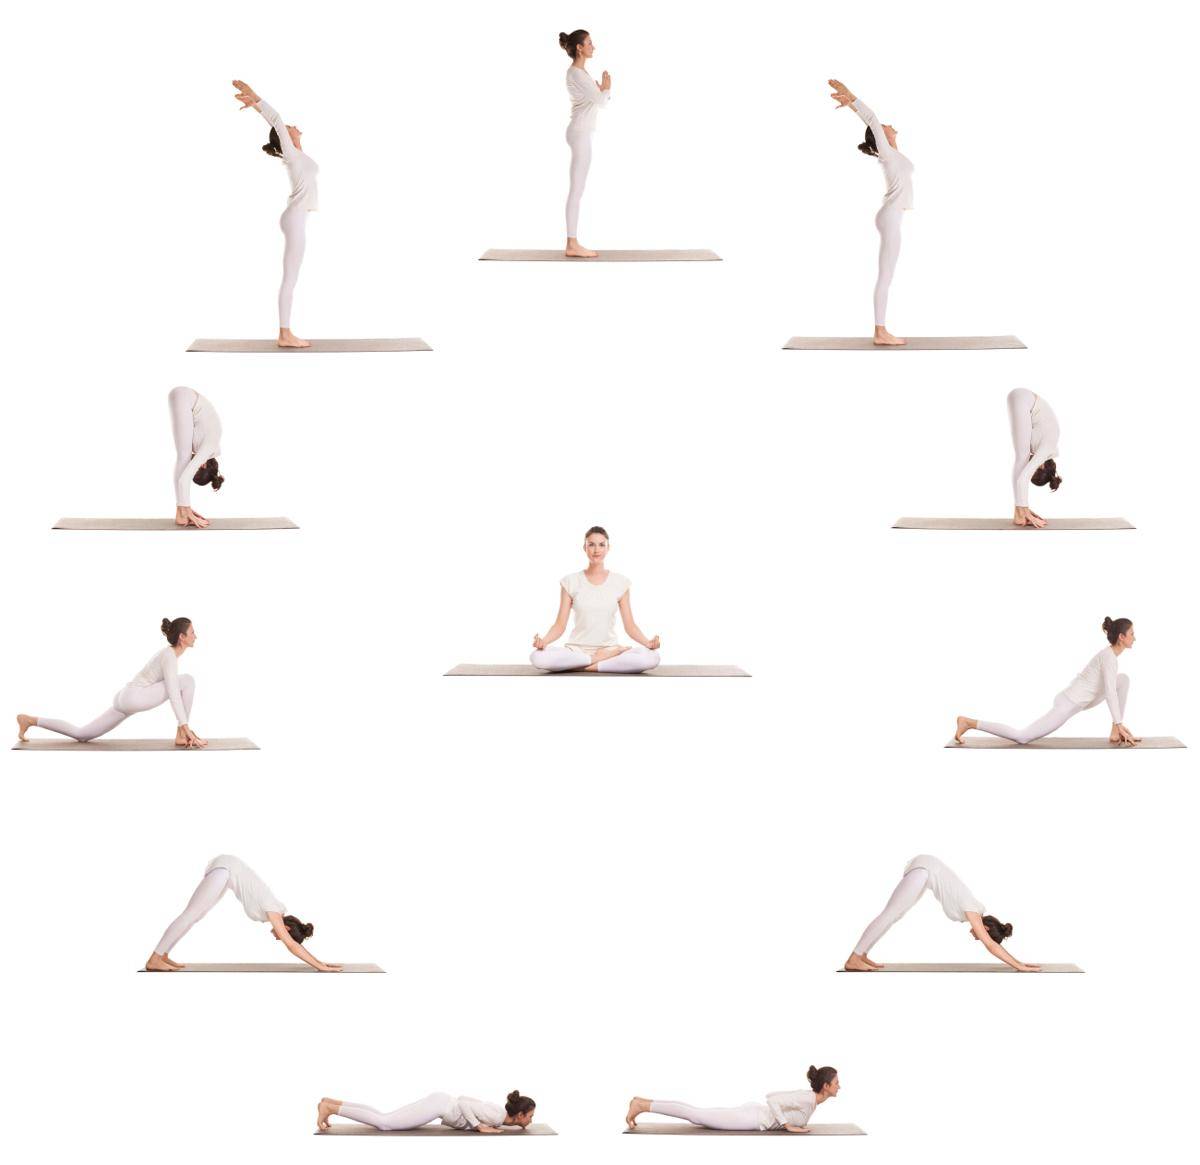 Йога против кризиса: комплекс йоги «семью семь» от андрея левшинова, комплекс противокризисной йоги от елены ульмасбаевой